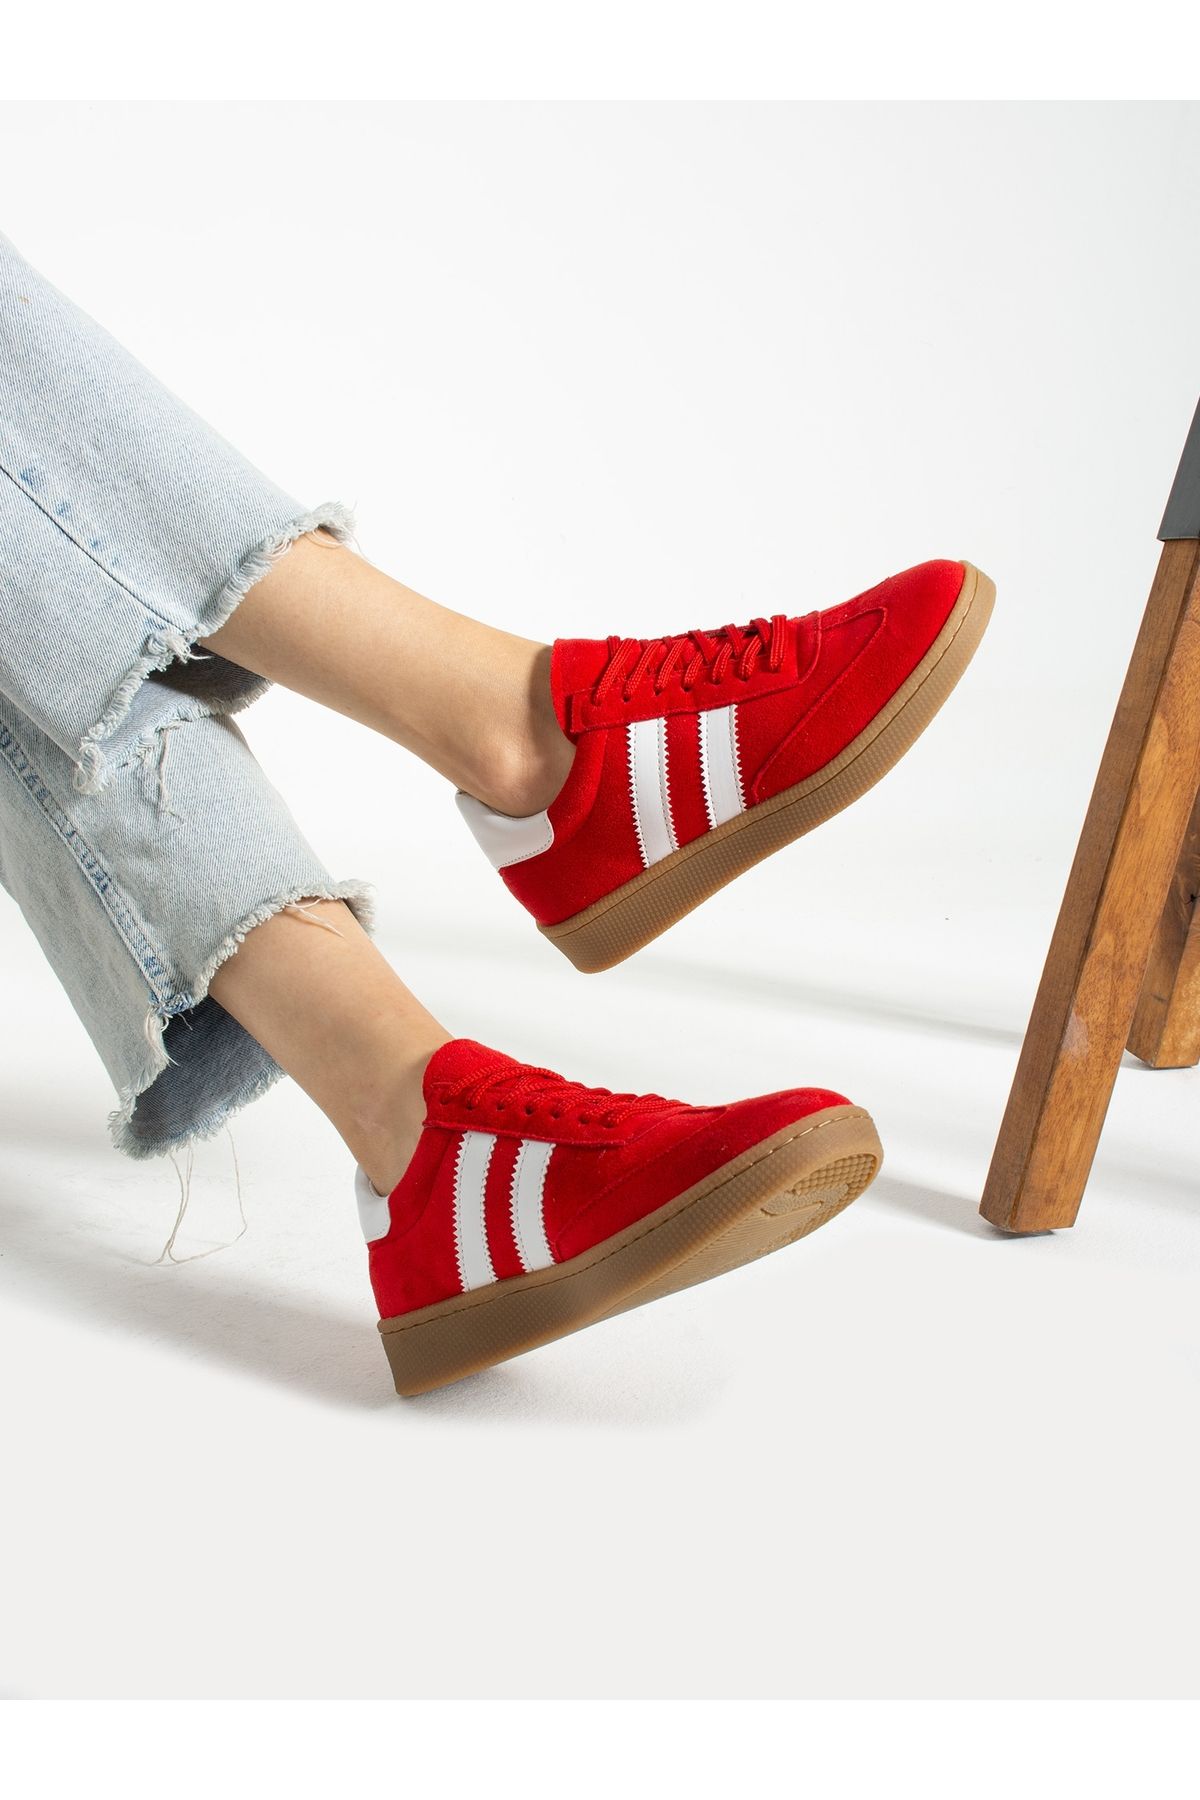 Alemdar Shoes Kırmızı-Beyaz Kadın Sneakers